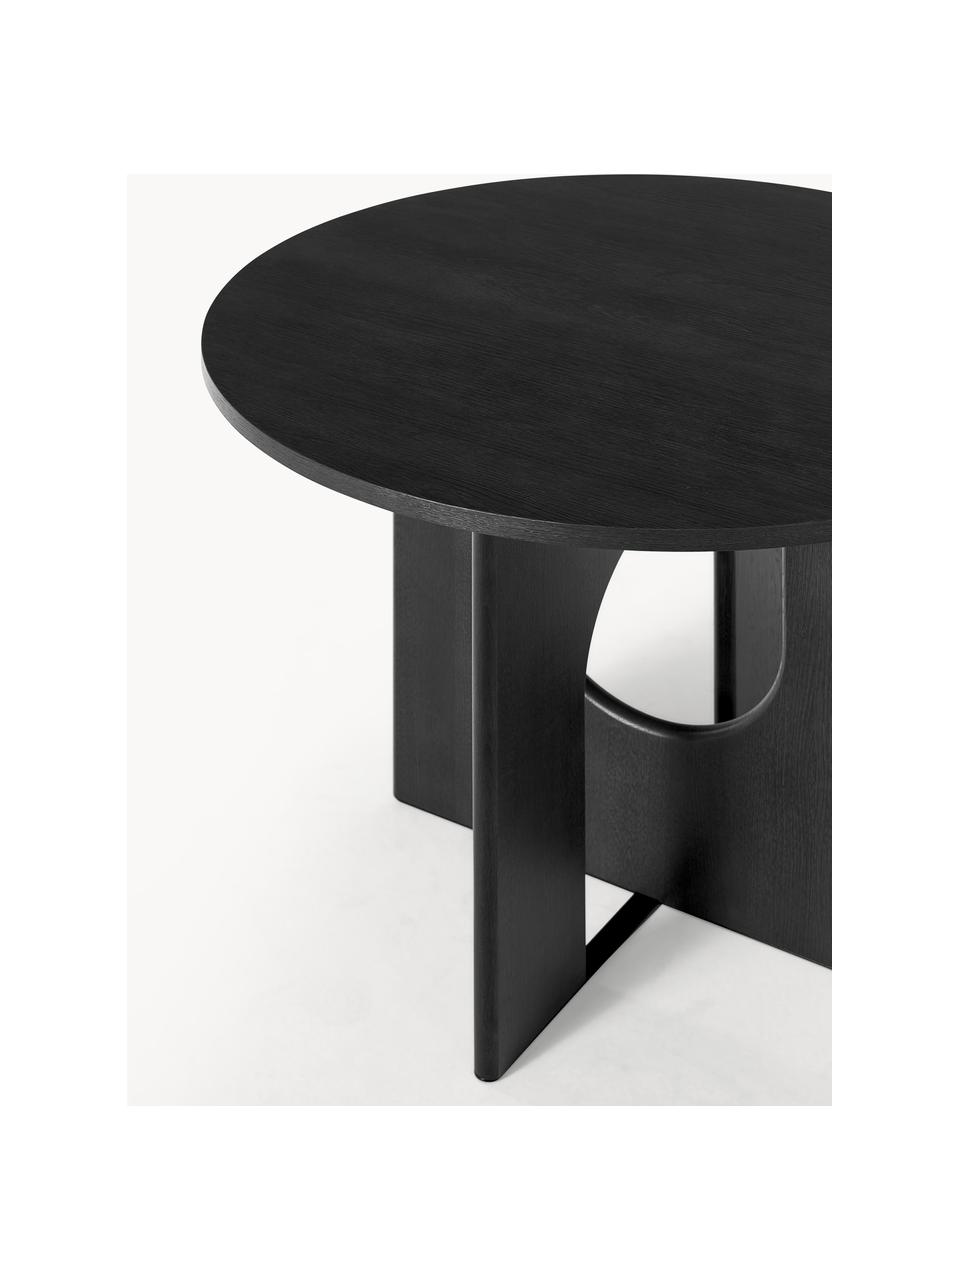 Table ronde Apollo, tailles variées, Chêne noir laqué, Ø 100 cm